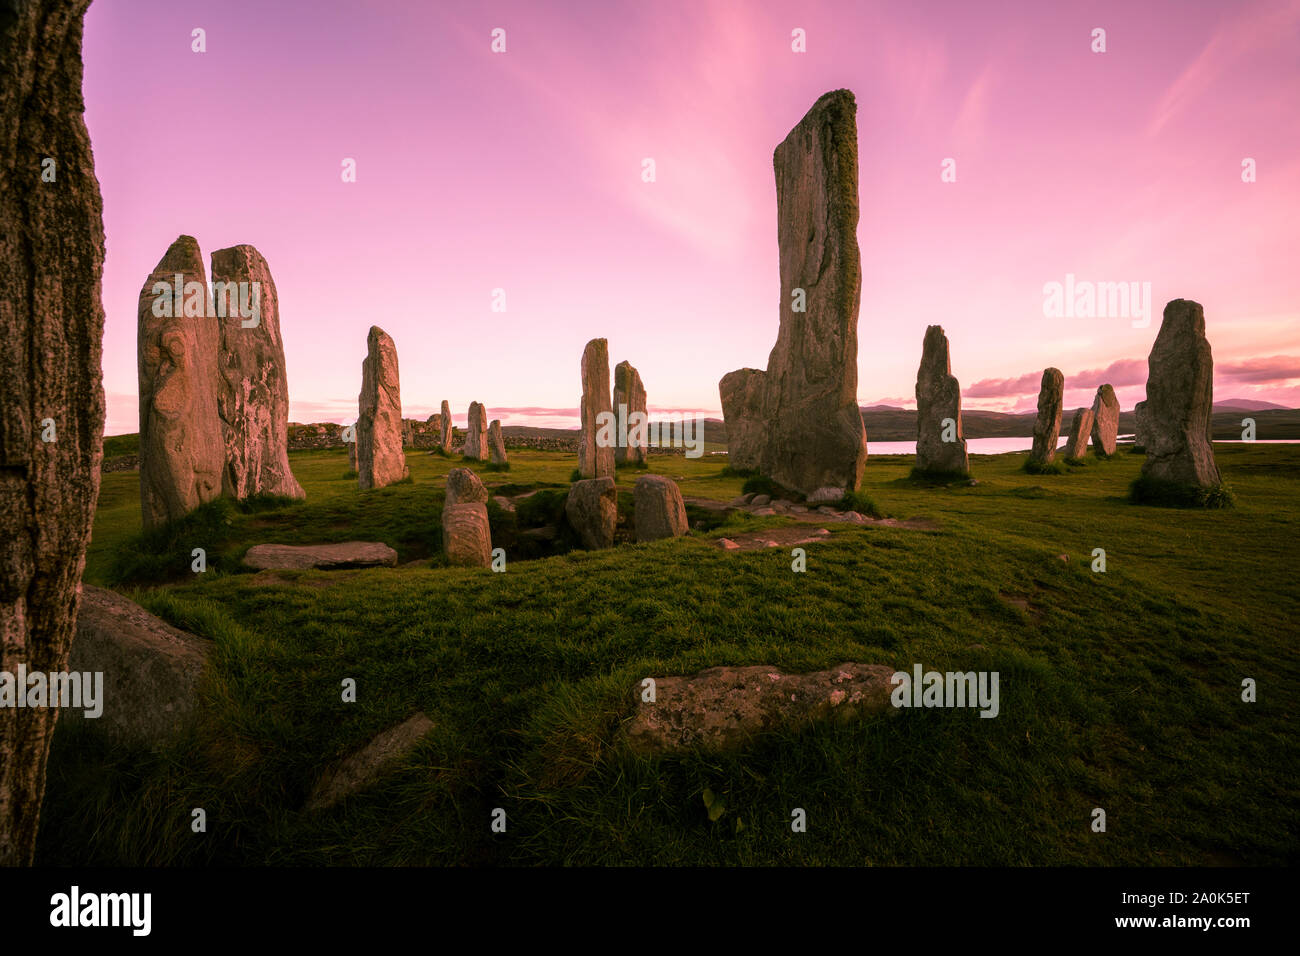 Mittleren Ring des Callanish standing stones gegen einen rosa Himmel auf der Insel Lewis, Äußere Hebriden, Schottland, Großbritannien Stockfoto